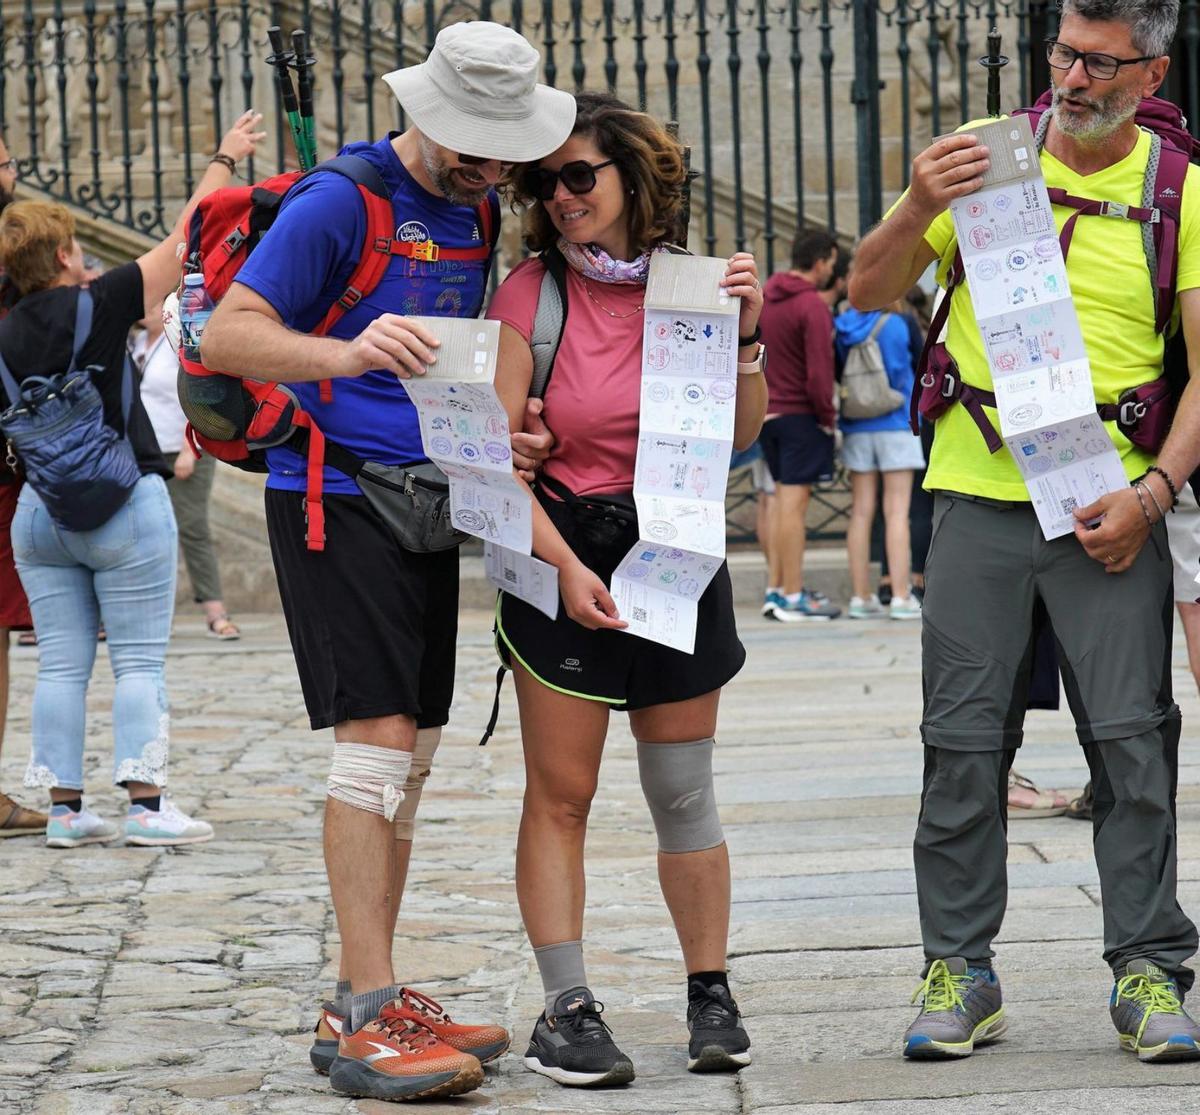 Tres peregrinos, dos de ellos con vendajes en la rodilla, muestran sus credenciales del Camino/jesús prieto